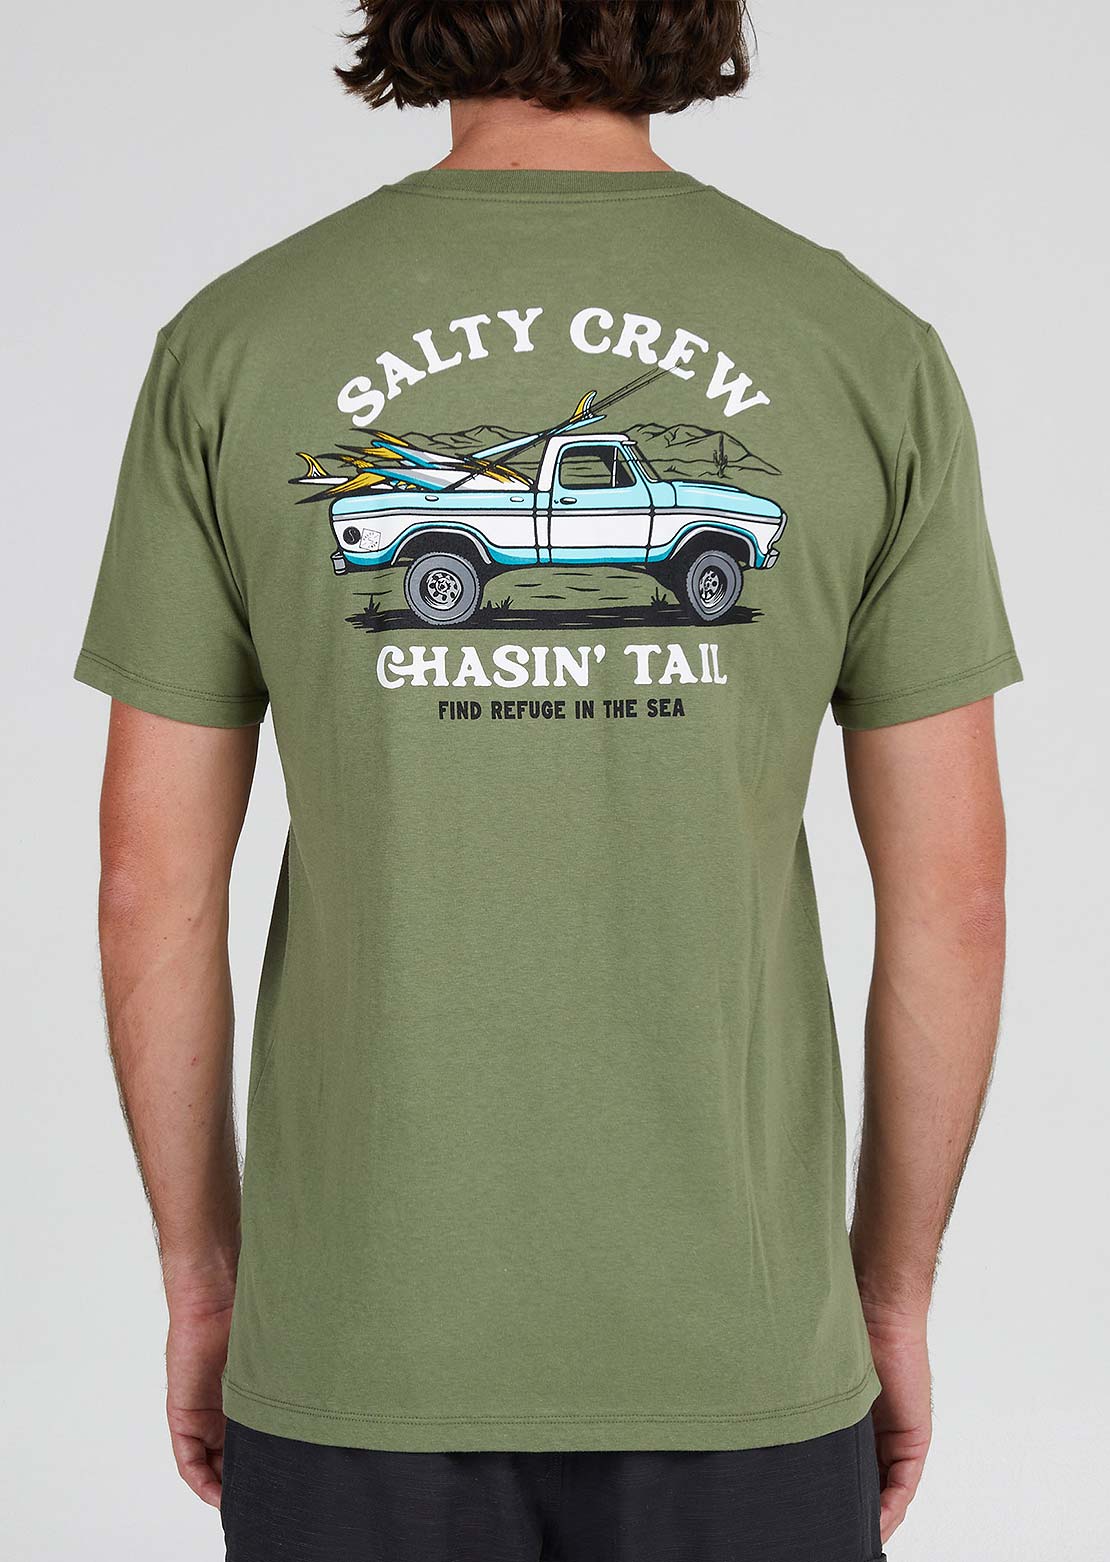 Salty Crew T-shirt premium hors route pour hommes - PRFO Sports